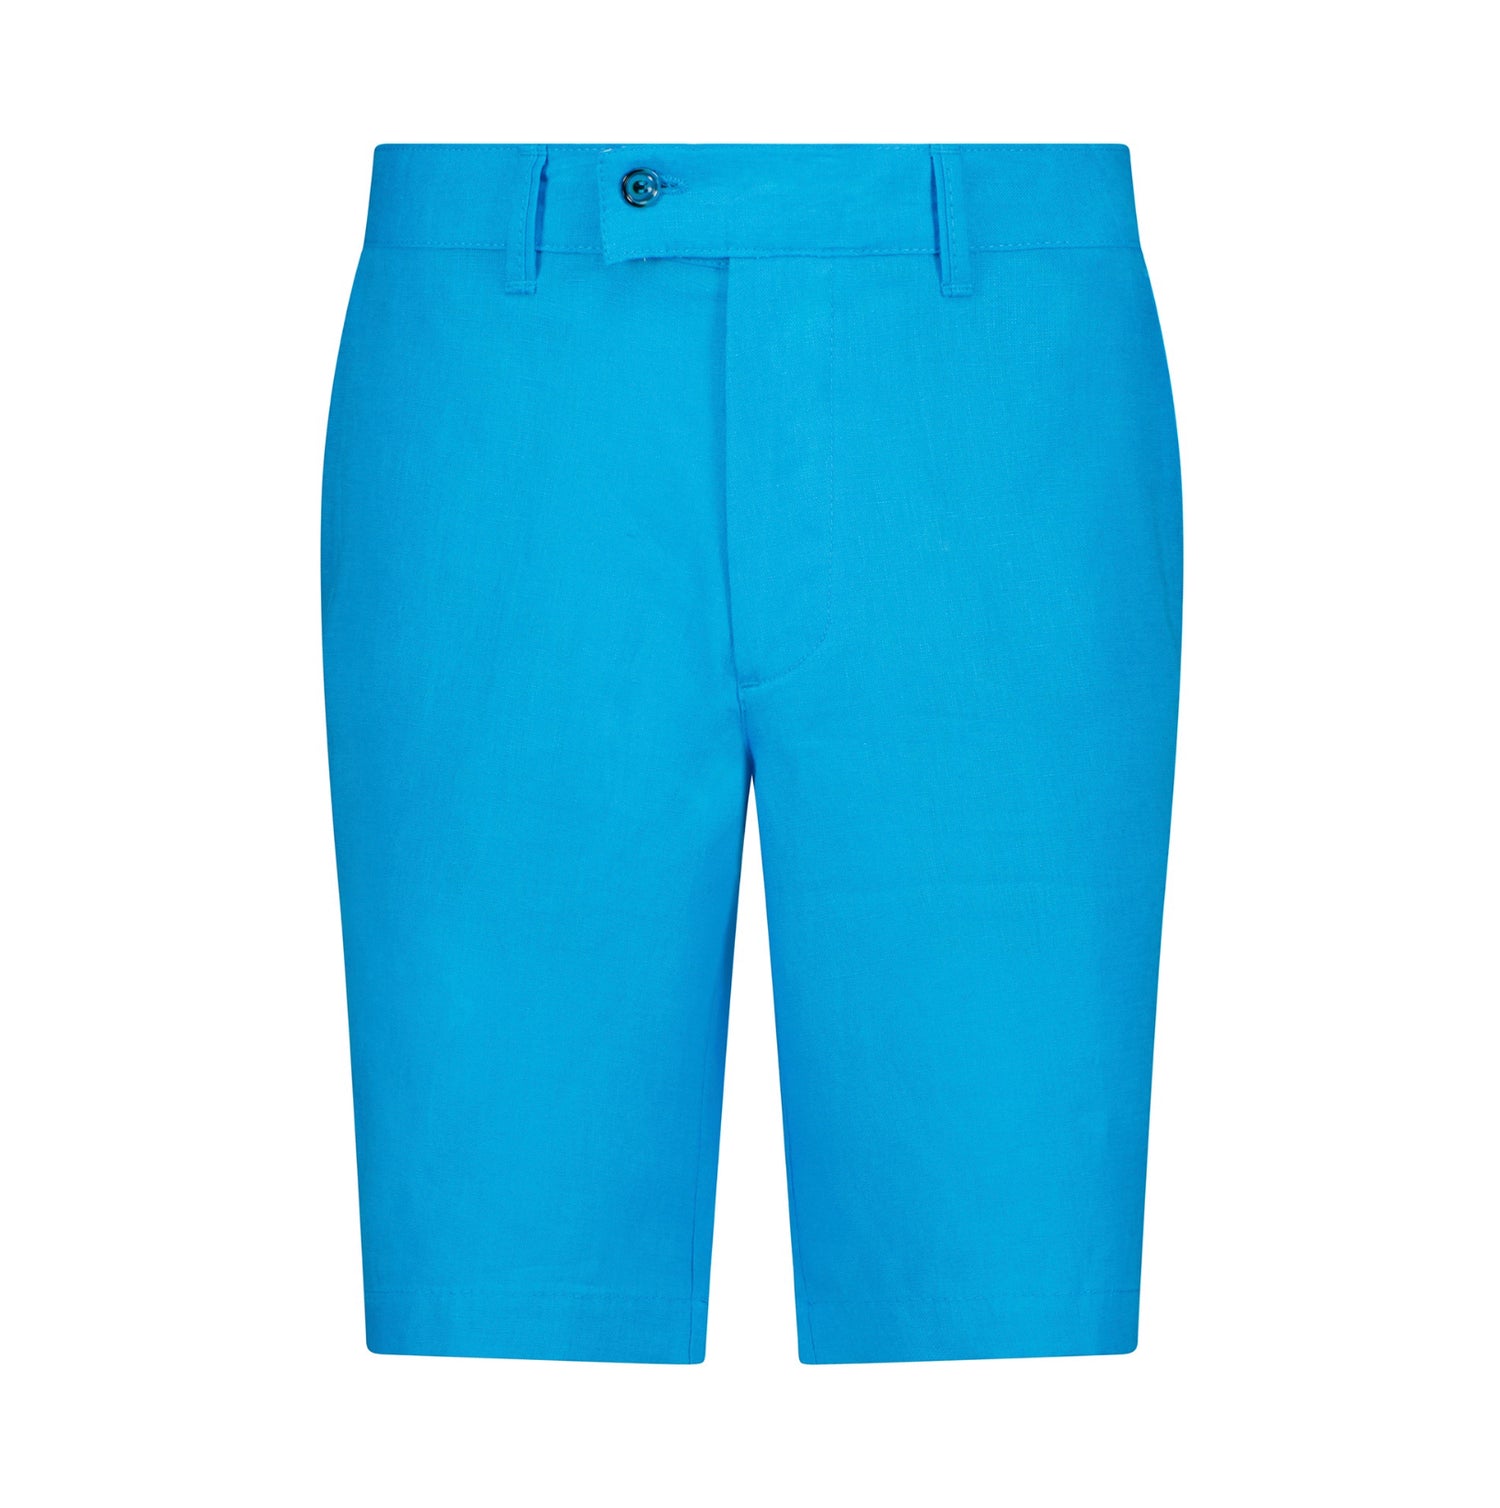 The Dante Linen Shorts - Aqua Blue